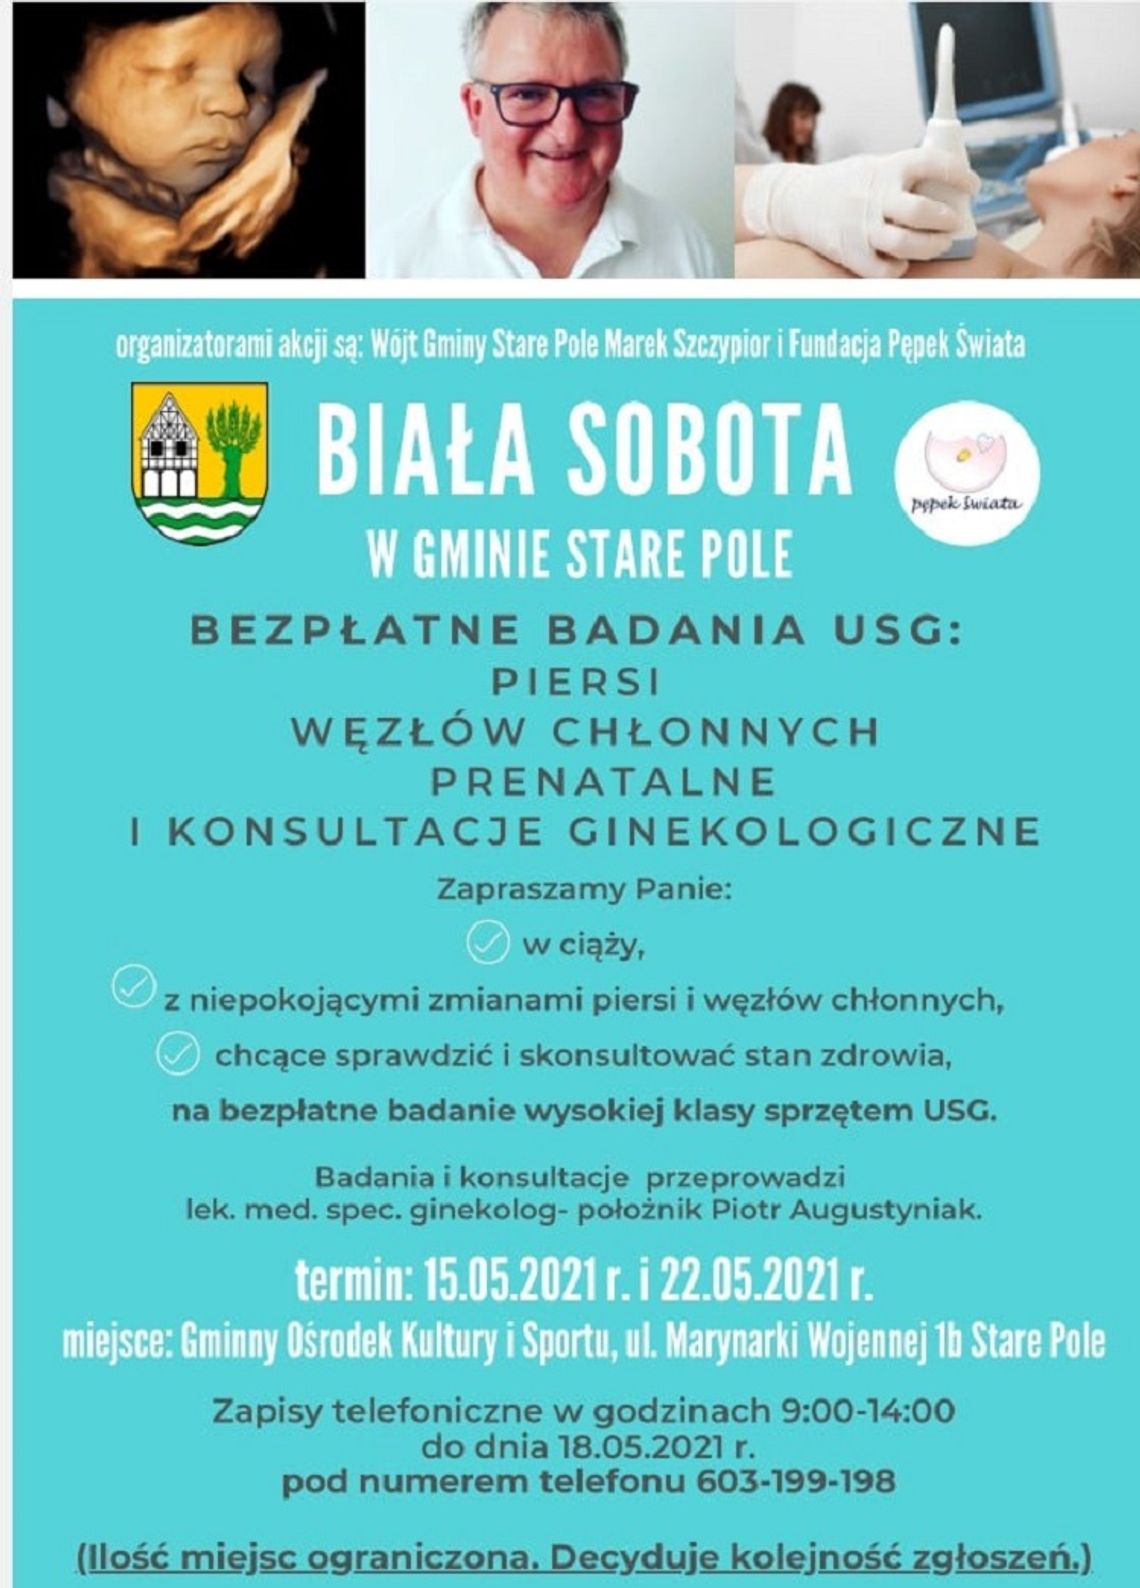 Bezpłatne badania oraz konsultacje ginekologiczne w Starym Polu.